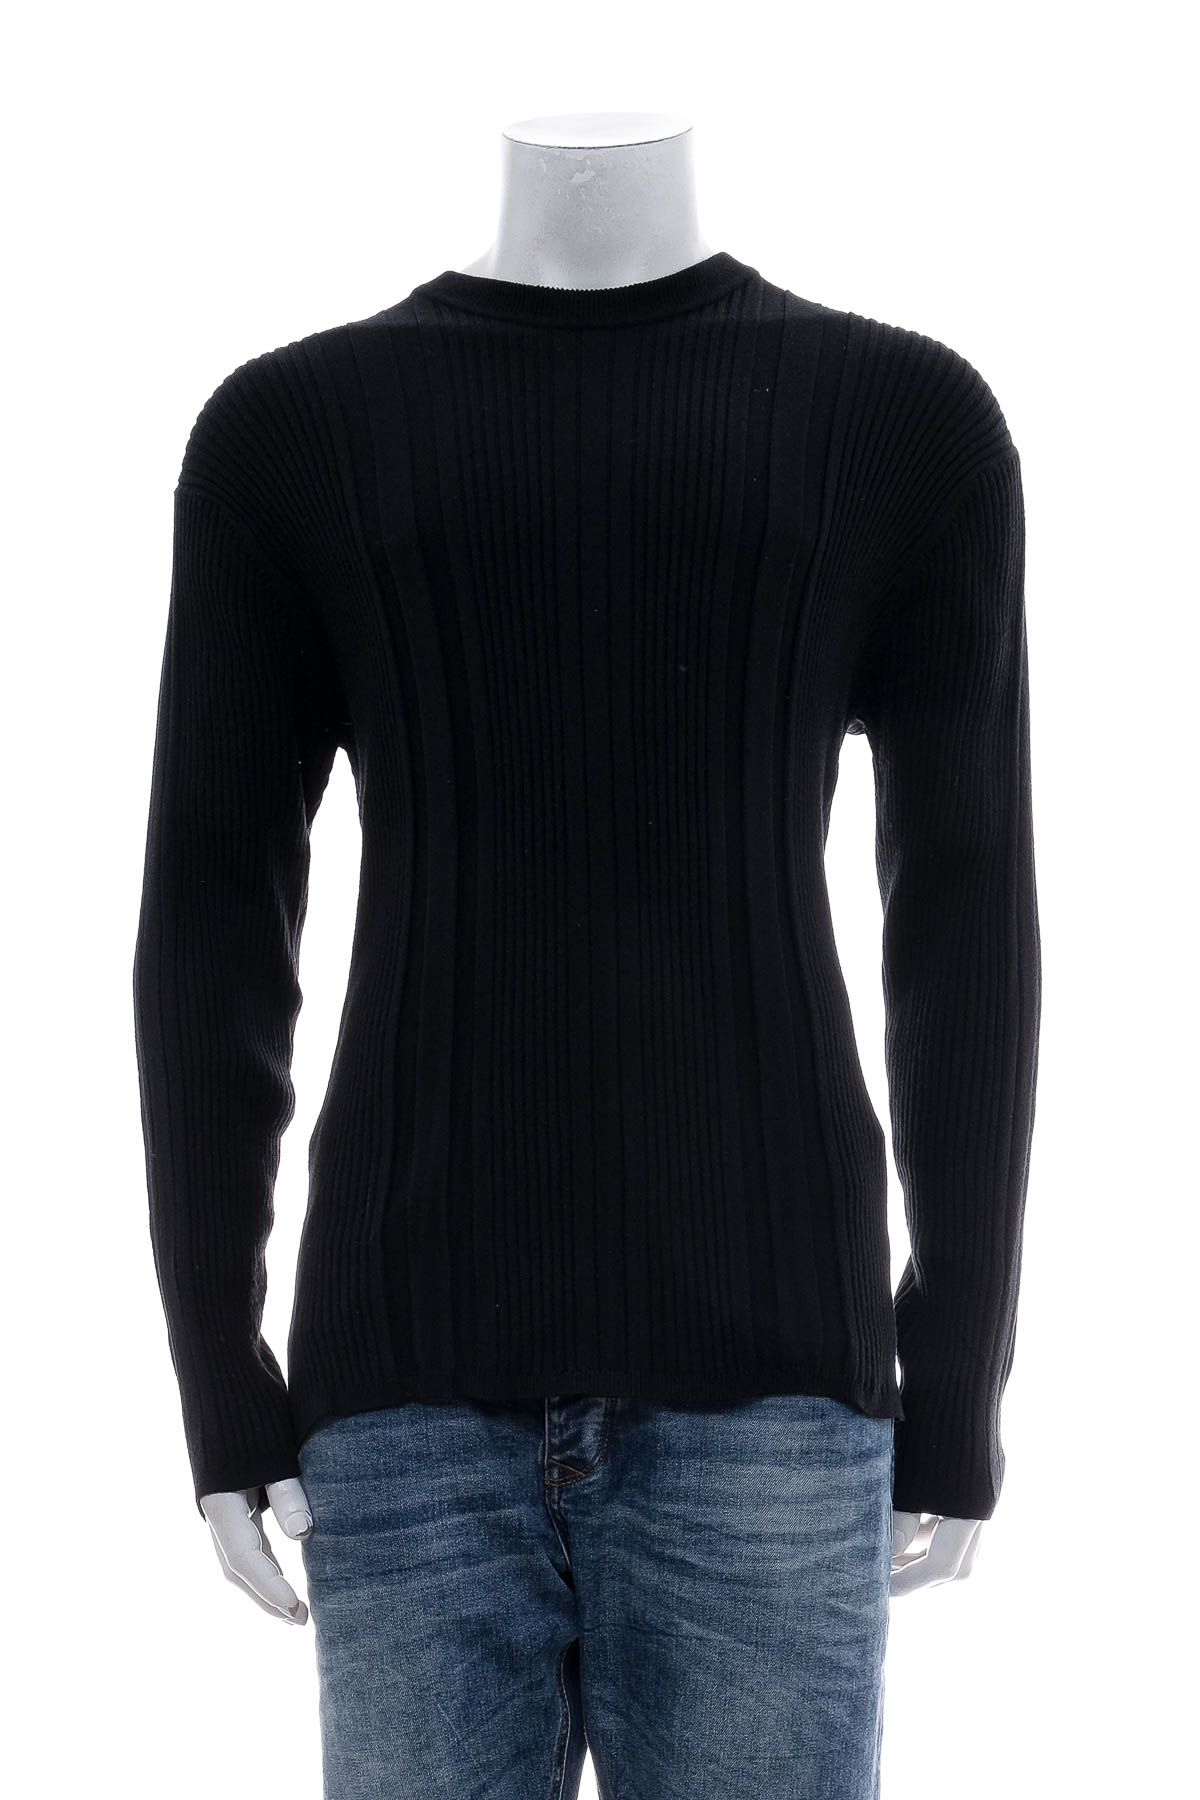 Men's sweater - Axcess - 0